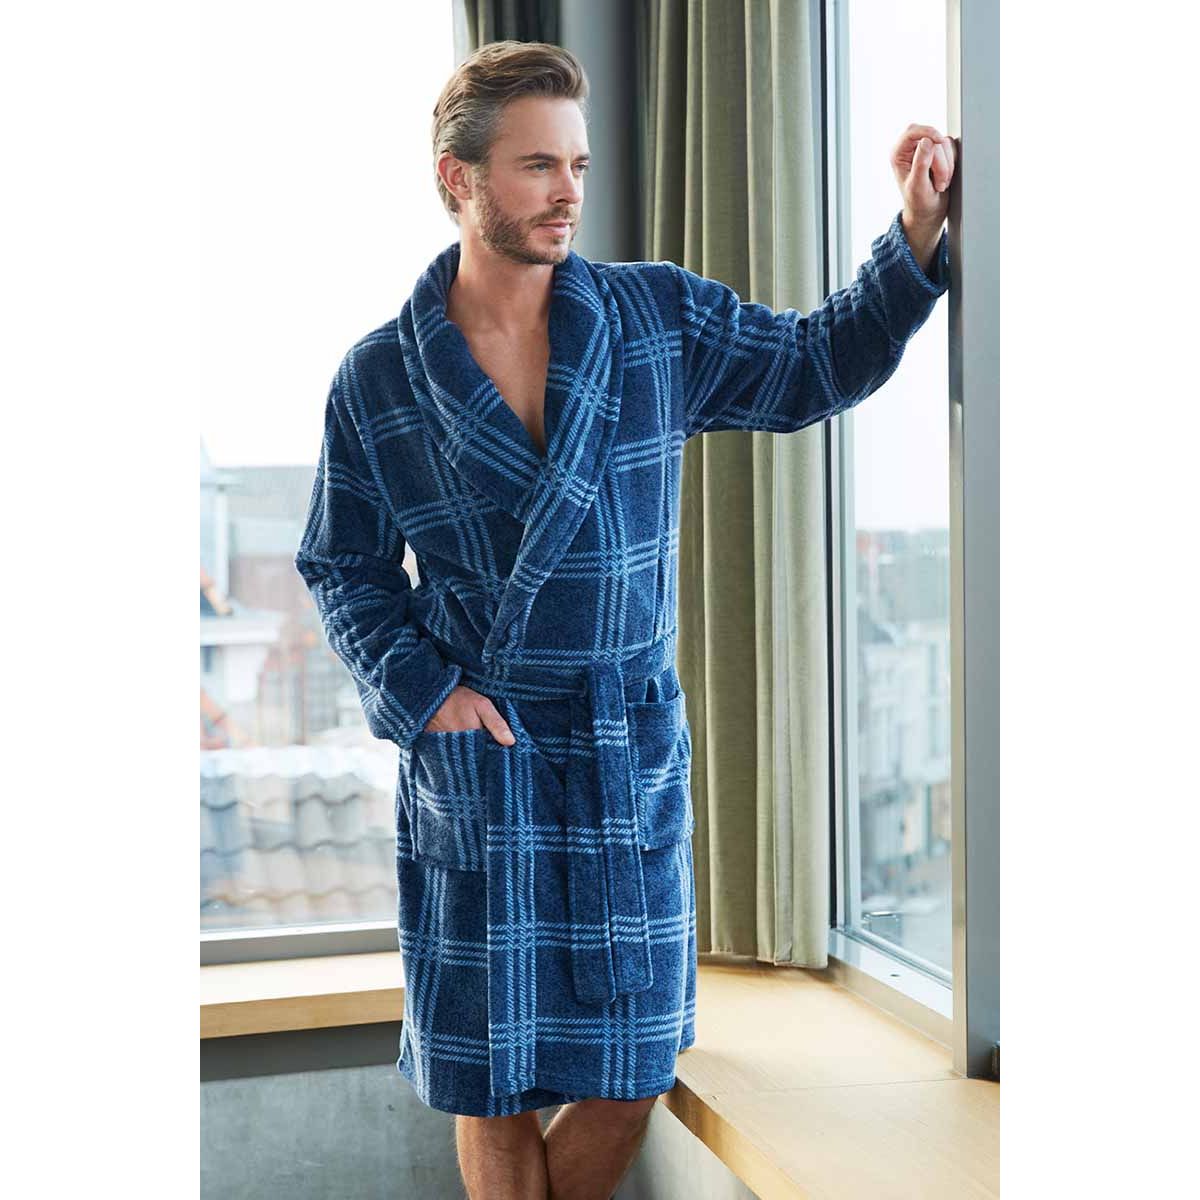 Verdraaiing heel fijn vonk Heren badjas blauw geruit Pastunette | Gratis verzending | Online de  mooiste pyjama's, nachthemden, ondermode en meer